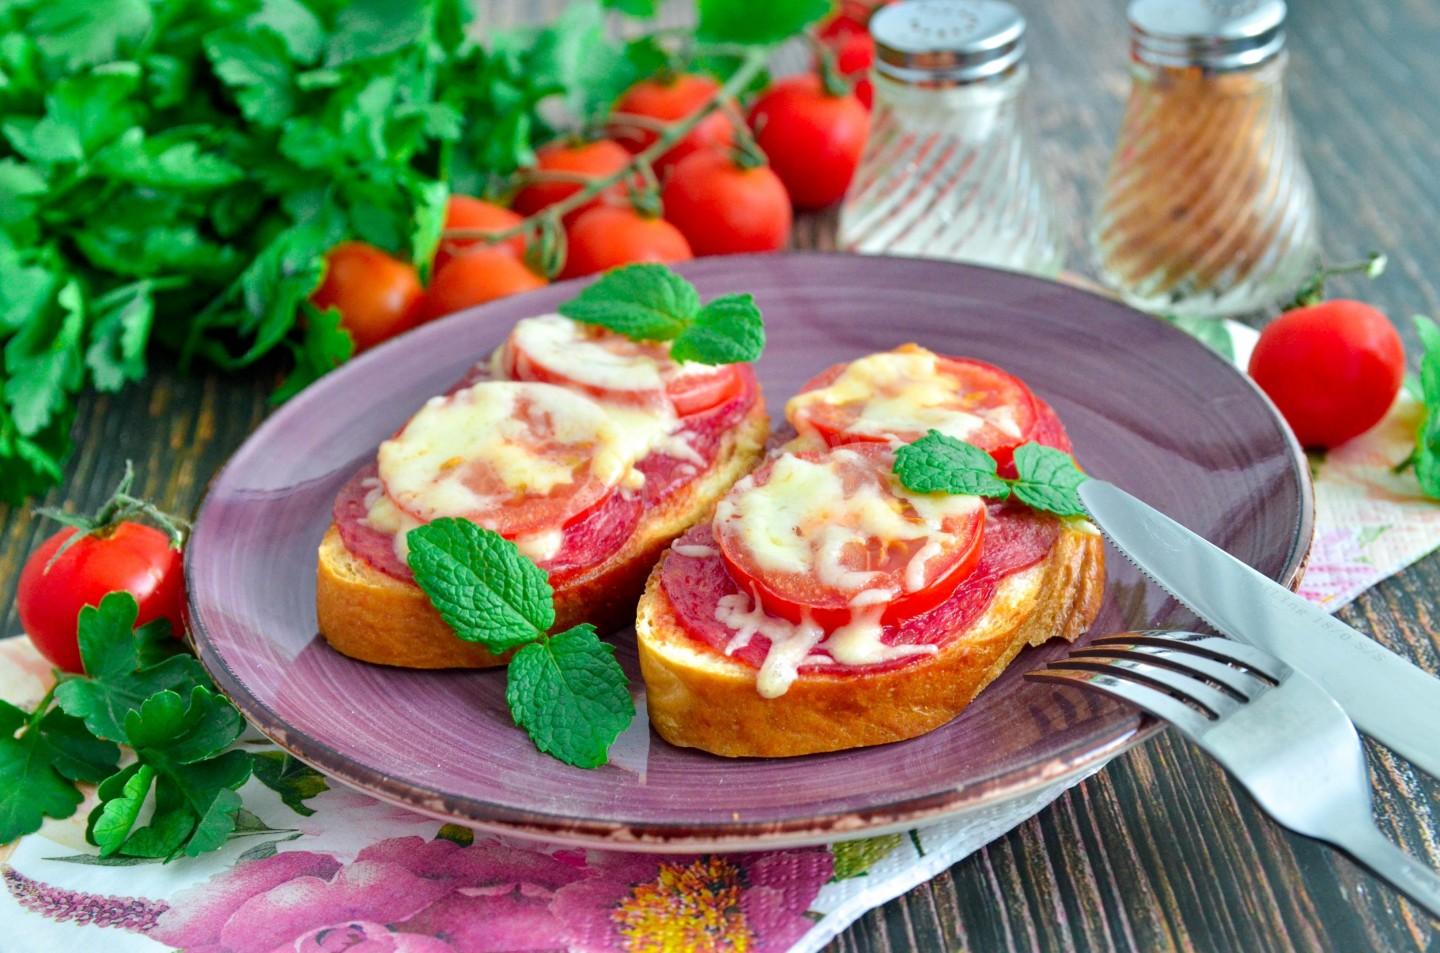 бутерброд с колбасой и помидором фото